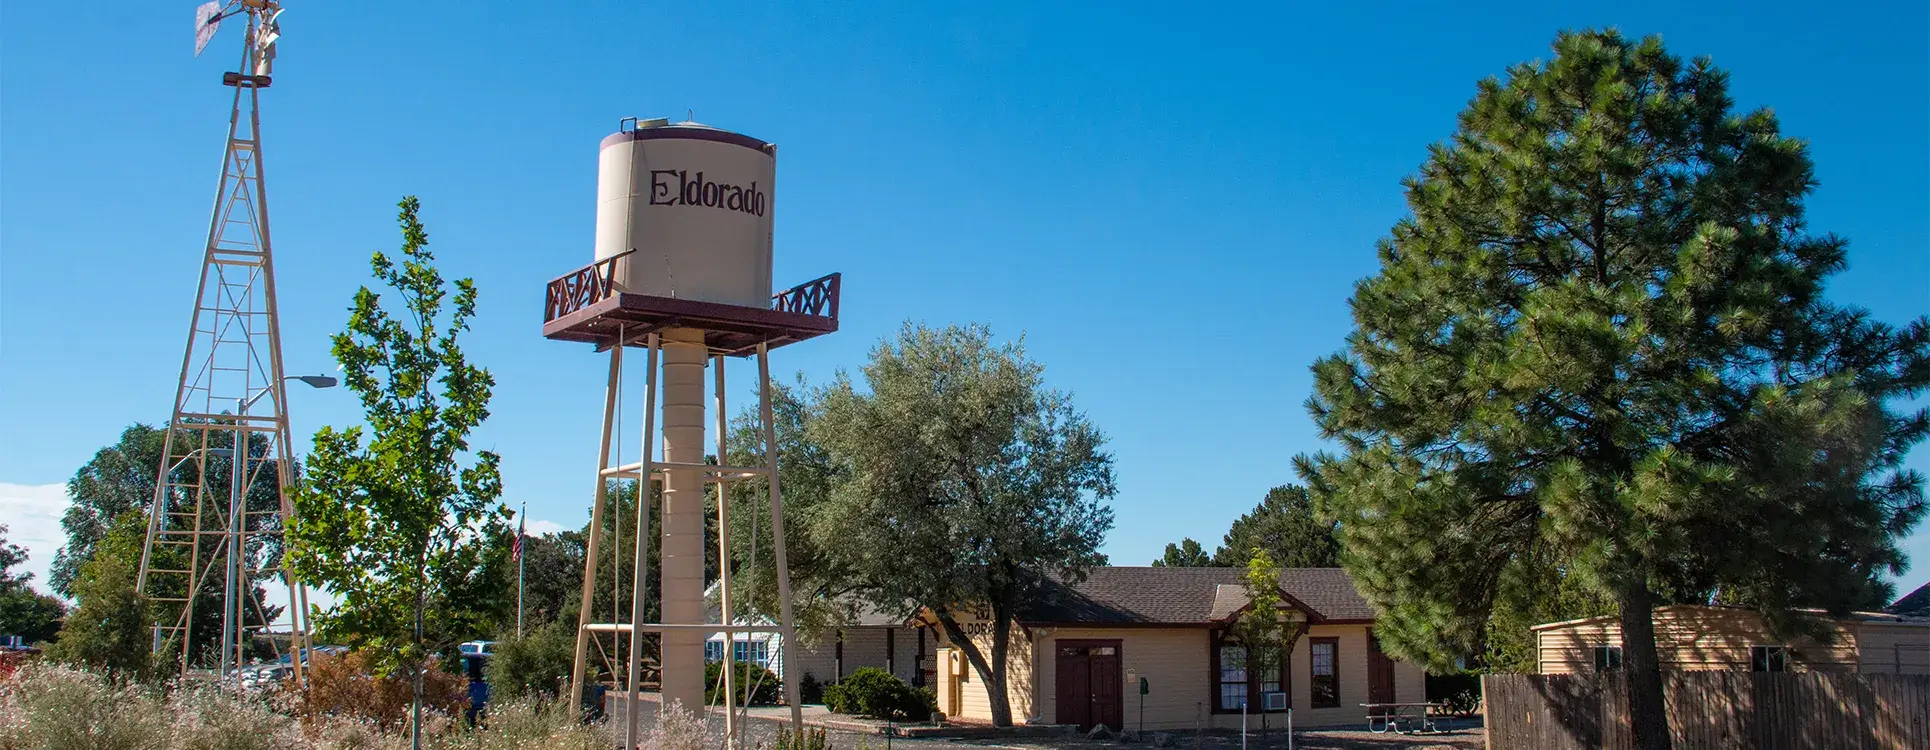 View of Eldorado, Santa Fe water tower and properties